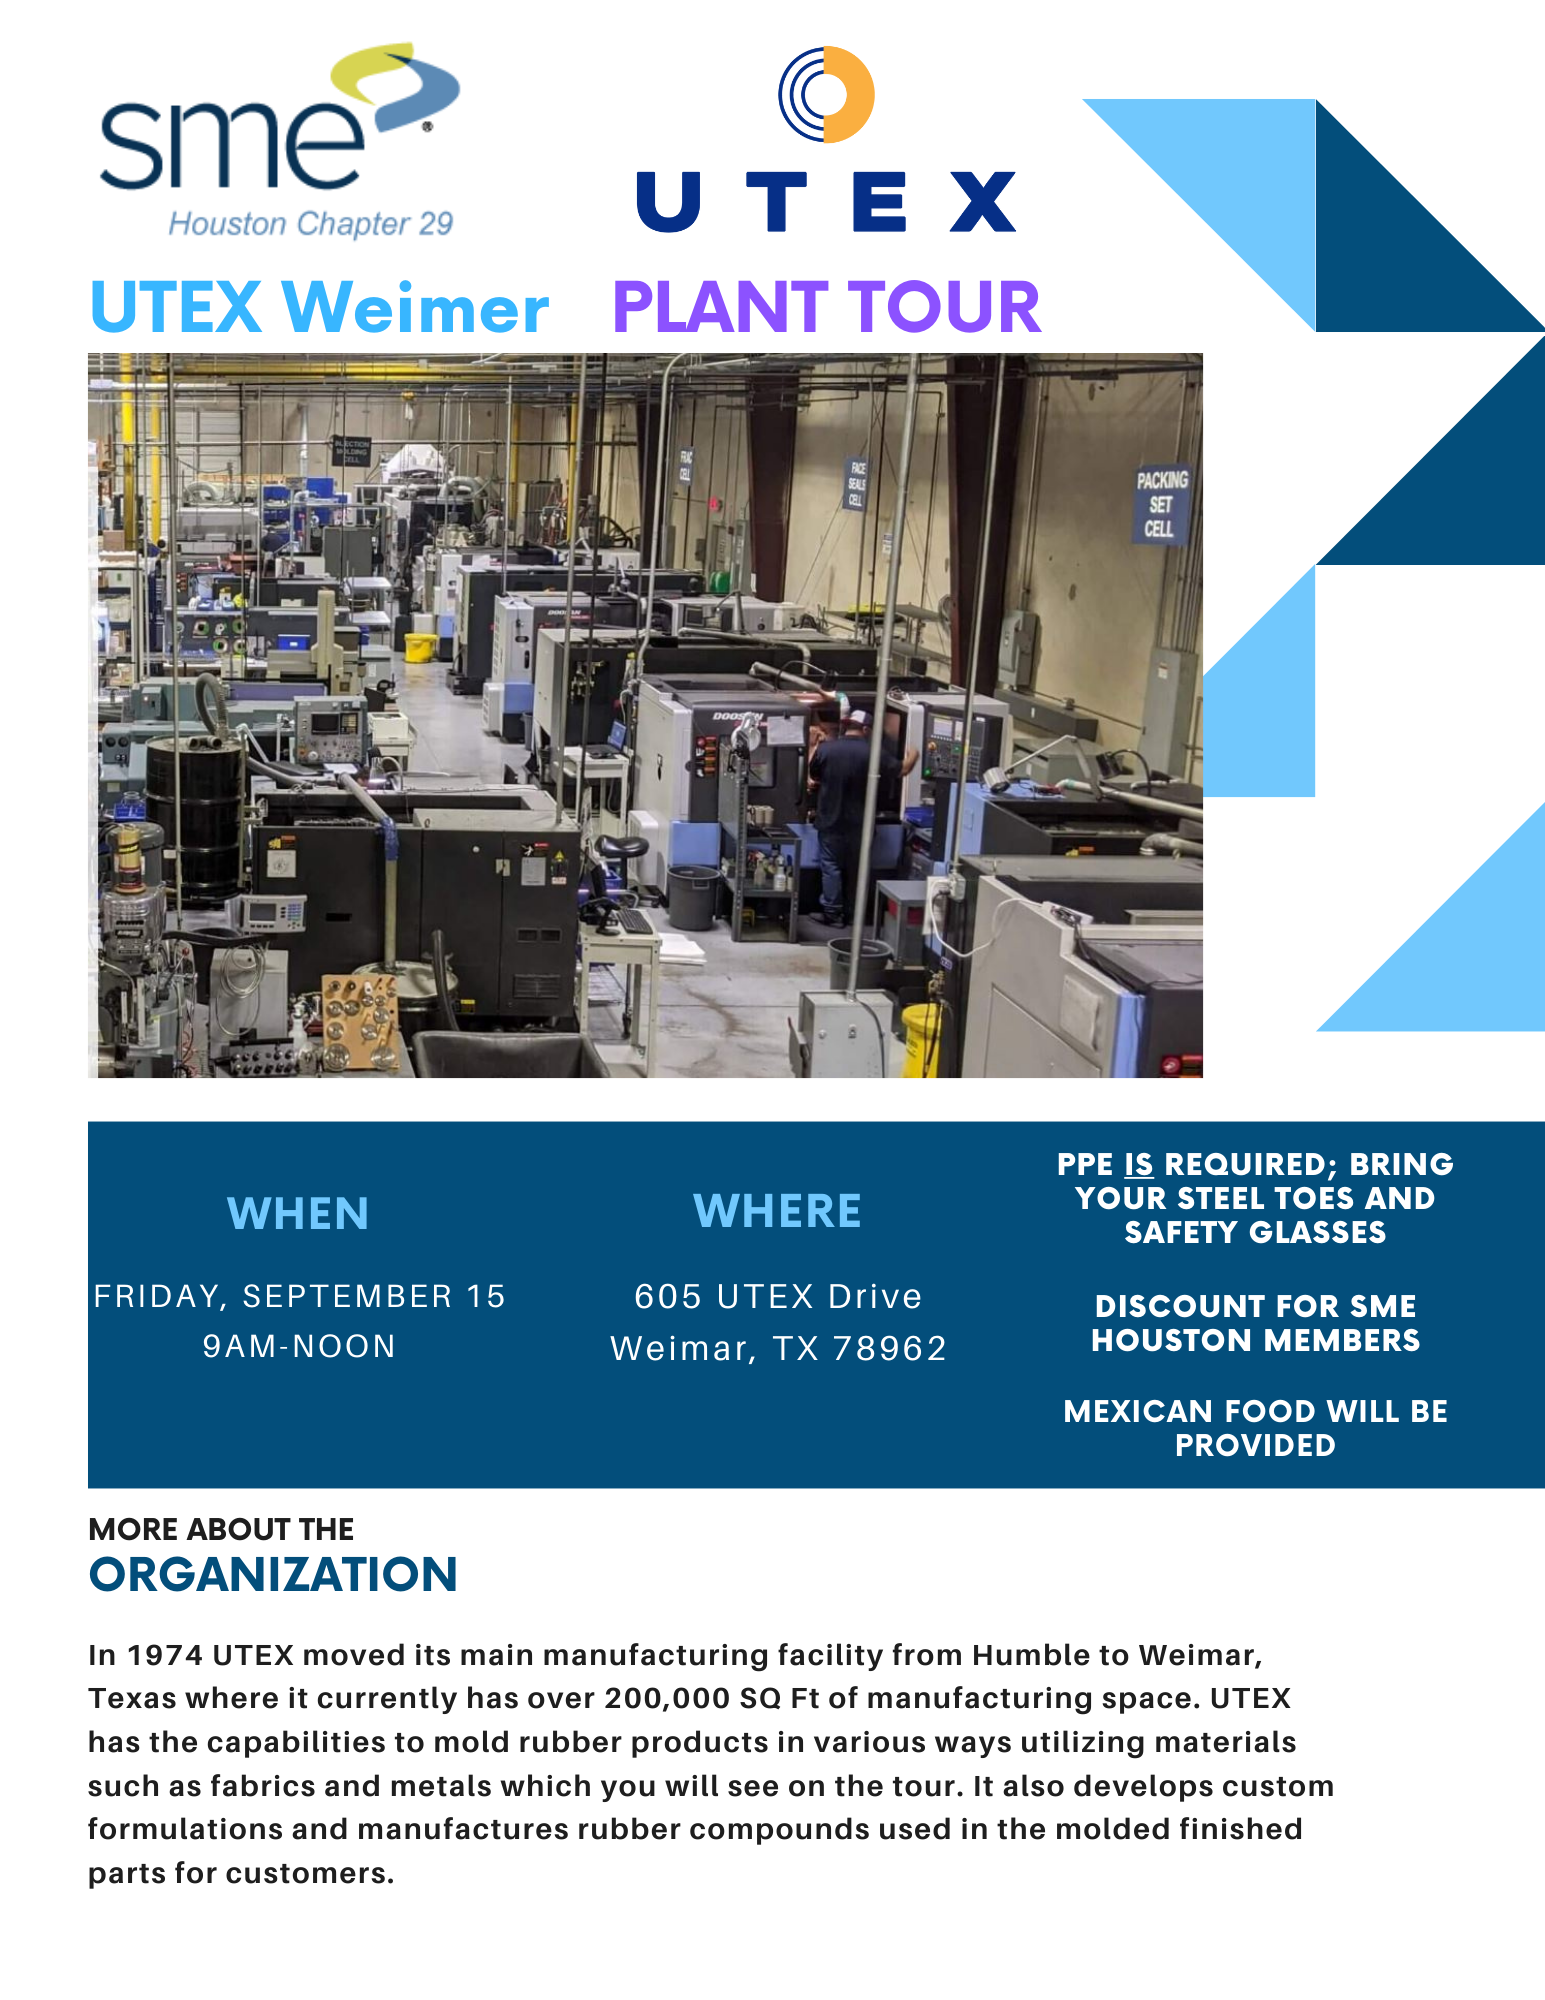 UTEX Plant Tour with SME Houston 29 1393